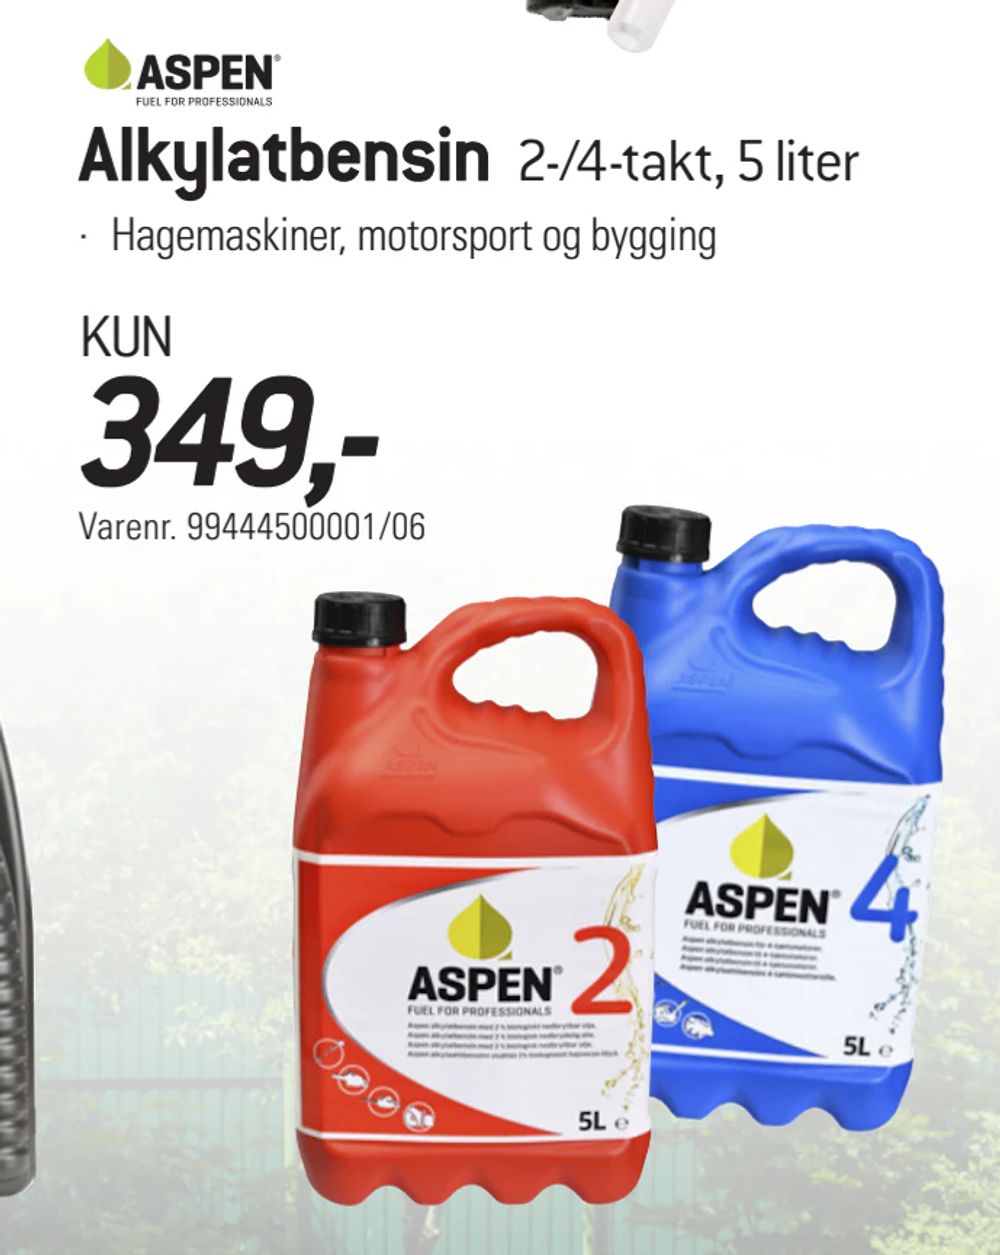 Tilbud på Alkylatbensin. 2-/4-takt, 5 liter fra thansen til 349 kr